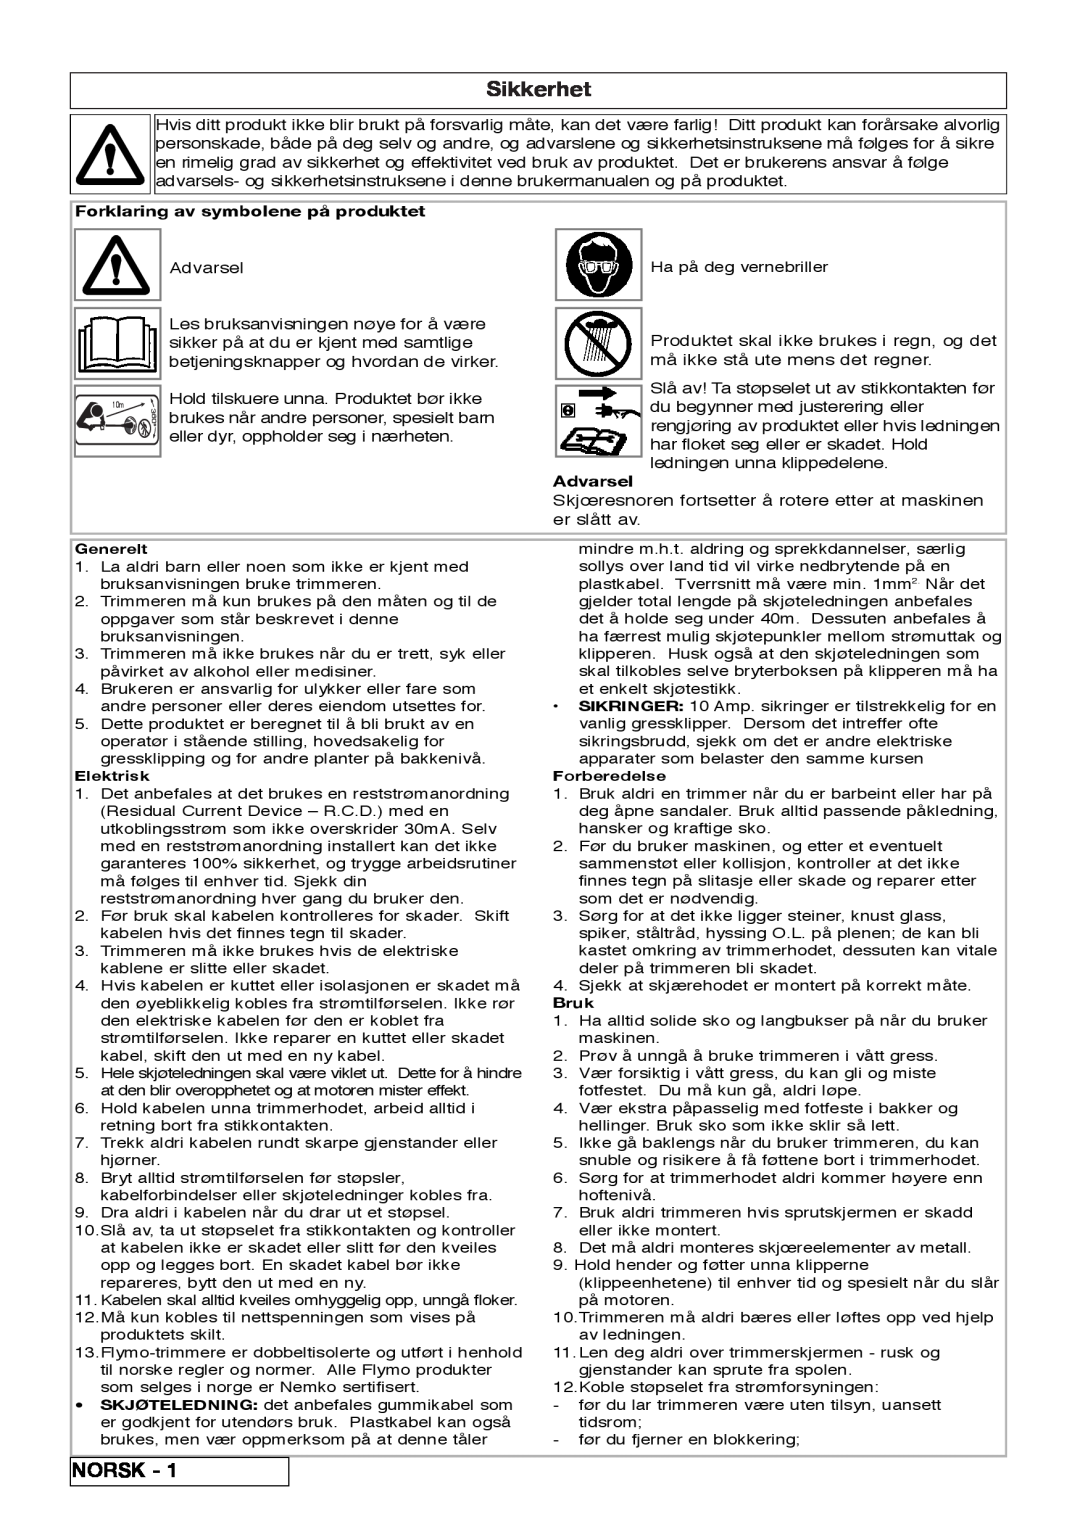 Flymo 800/1000 manual Sikkerhet, Norsk, Forklaring av symbolene på produktet, Advarsel 